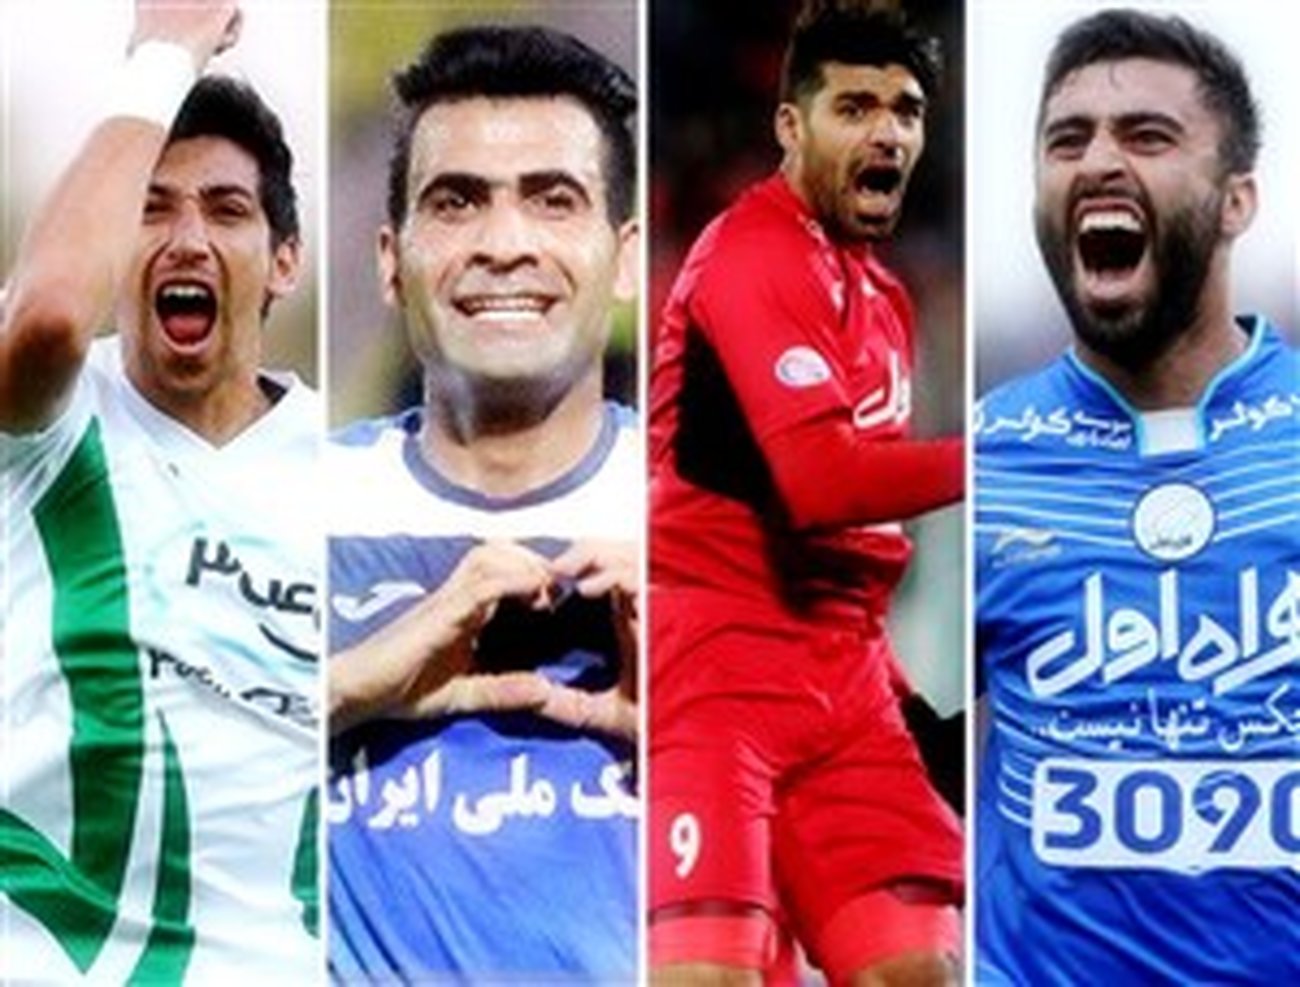 9 برگ برنده چهار تیم ایرانی در لیگ قهرمانان